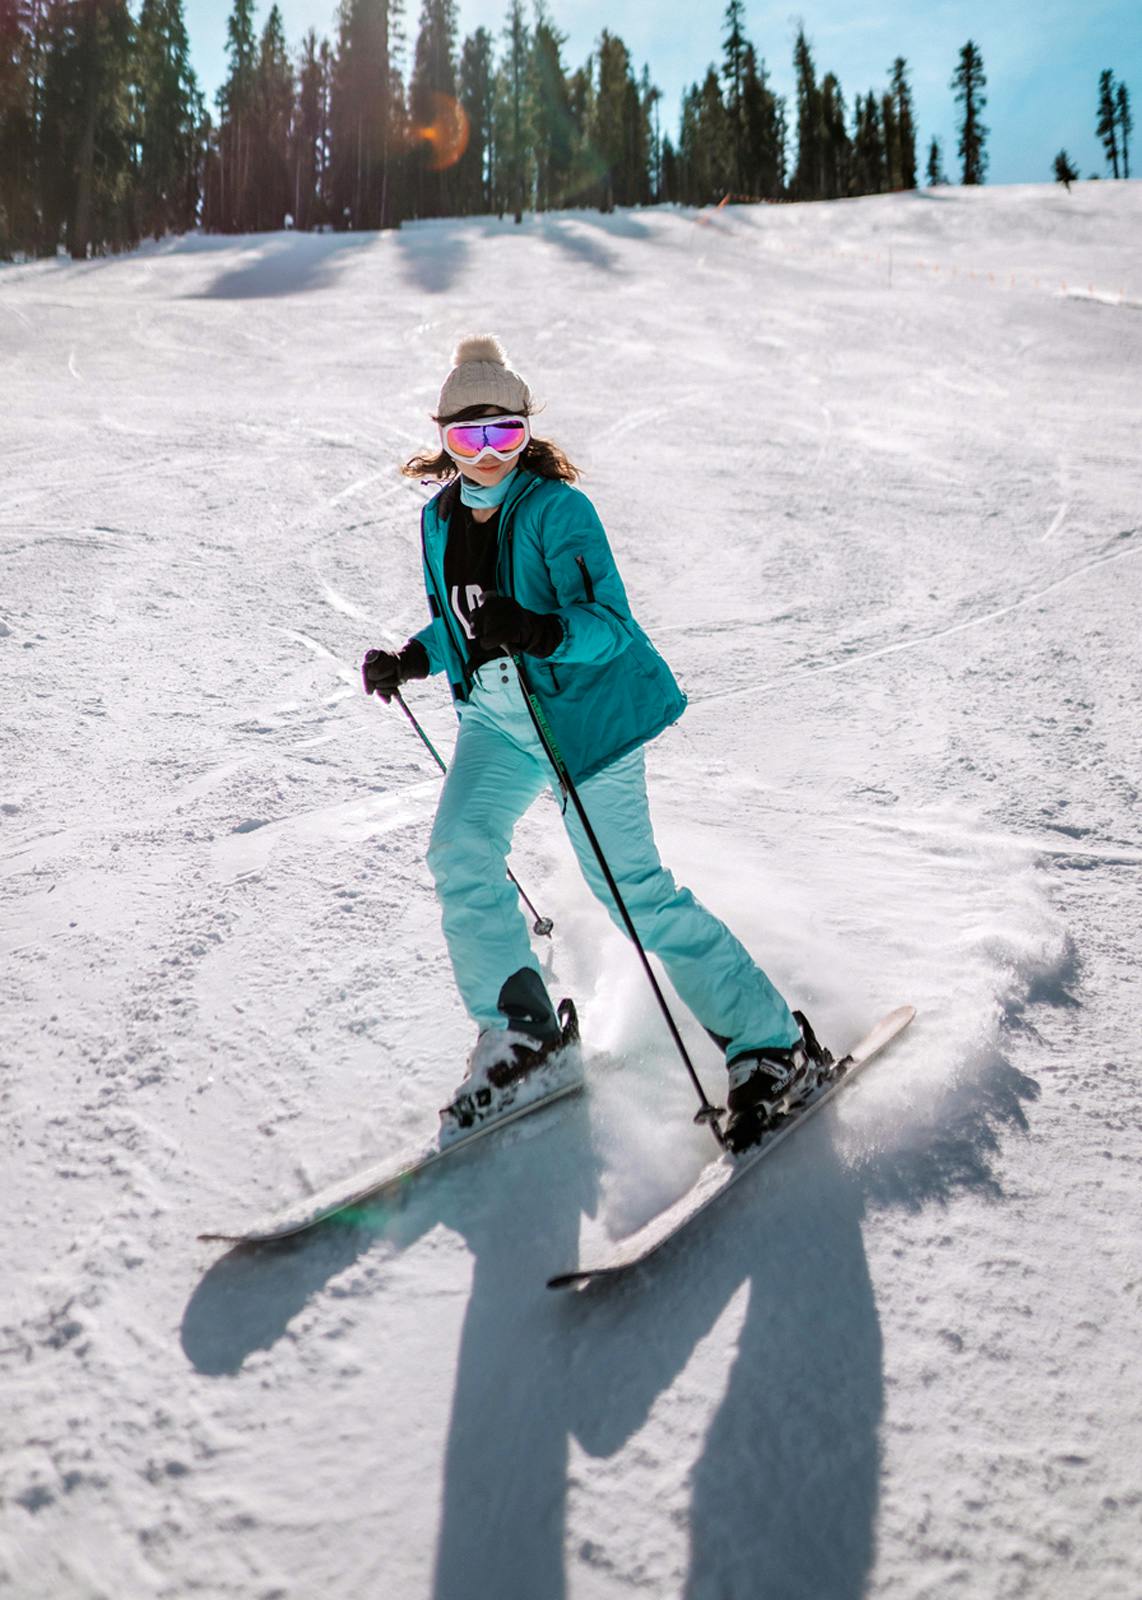 Ski clothes & ski wear: Snow clothes, winter ski clothes, alpine